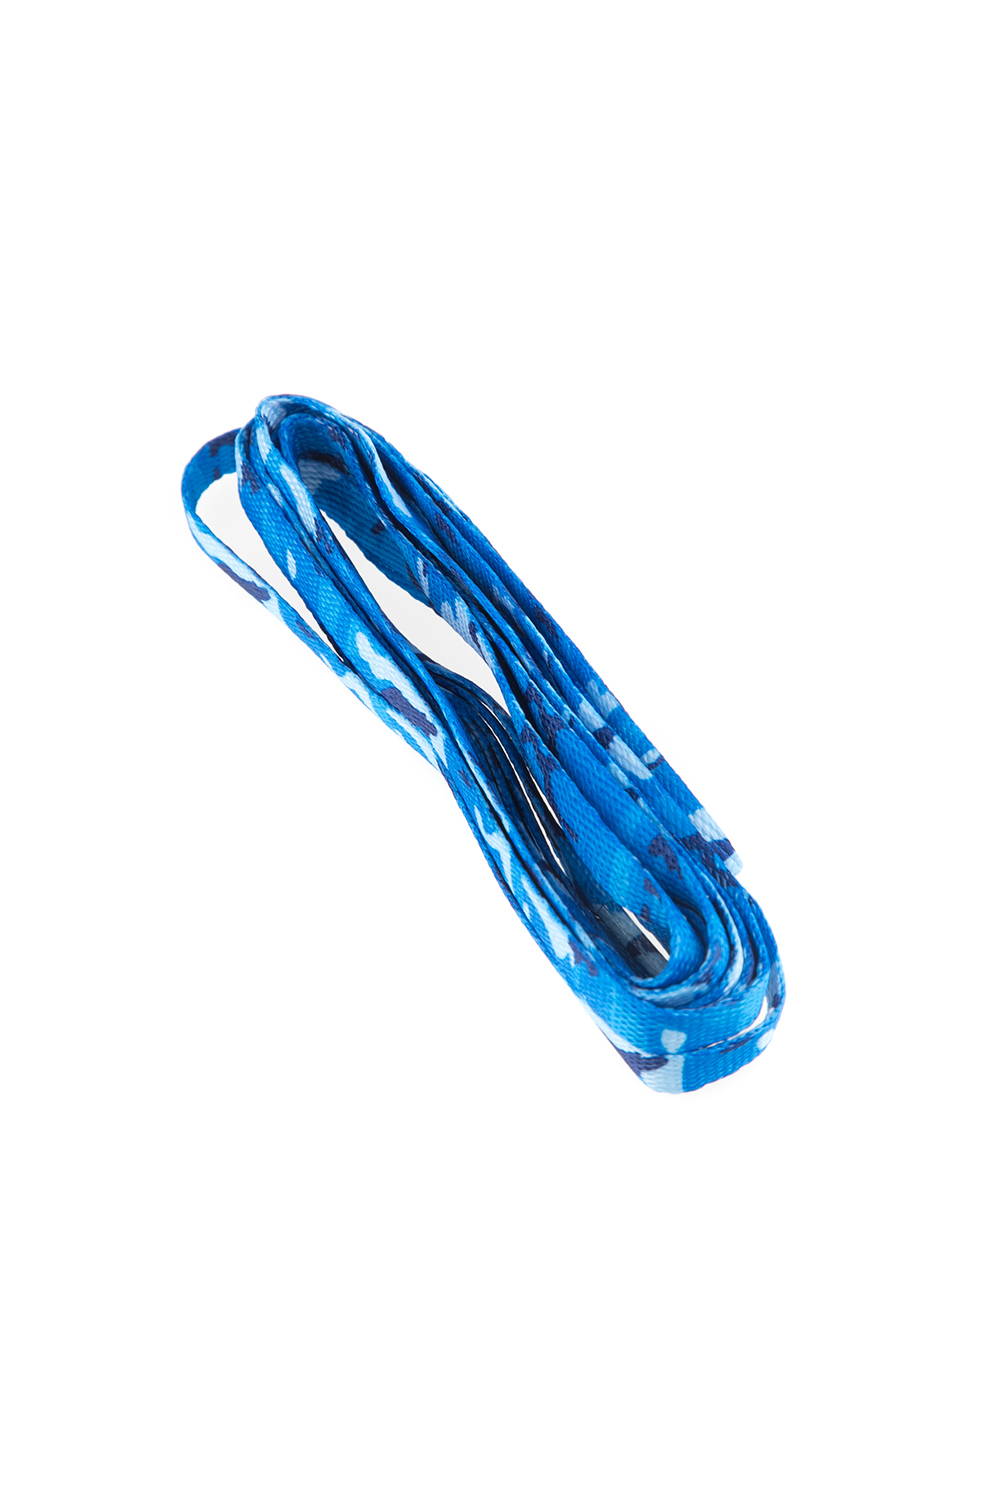 TUBELACES – Unisex κορδόνια TUBELACES SPECIAL FLAT μπλε με παραλλαγή 1670418.0-00G5